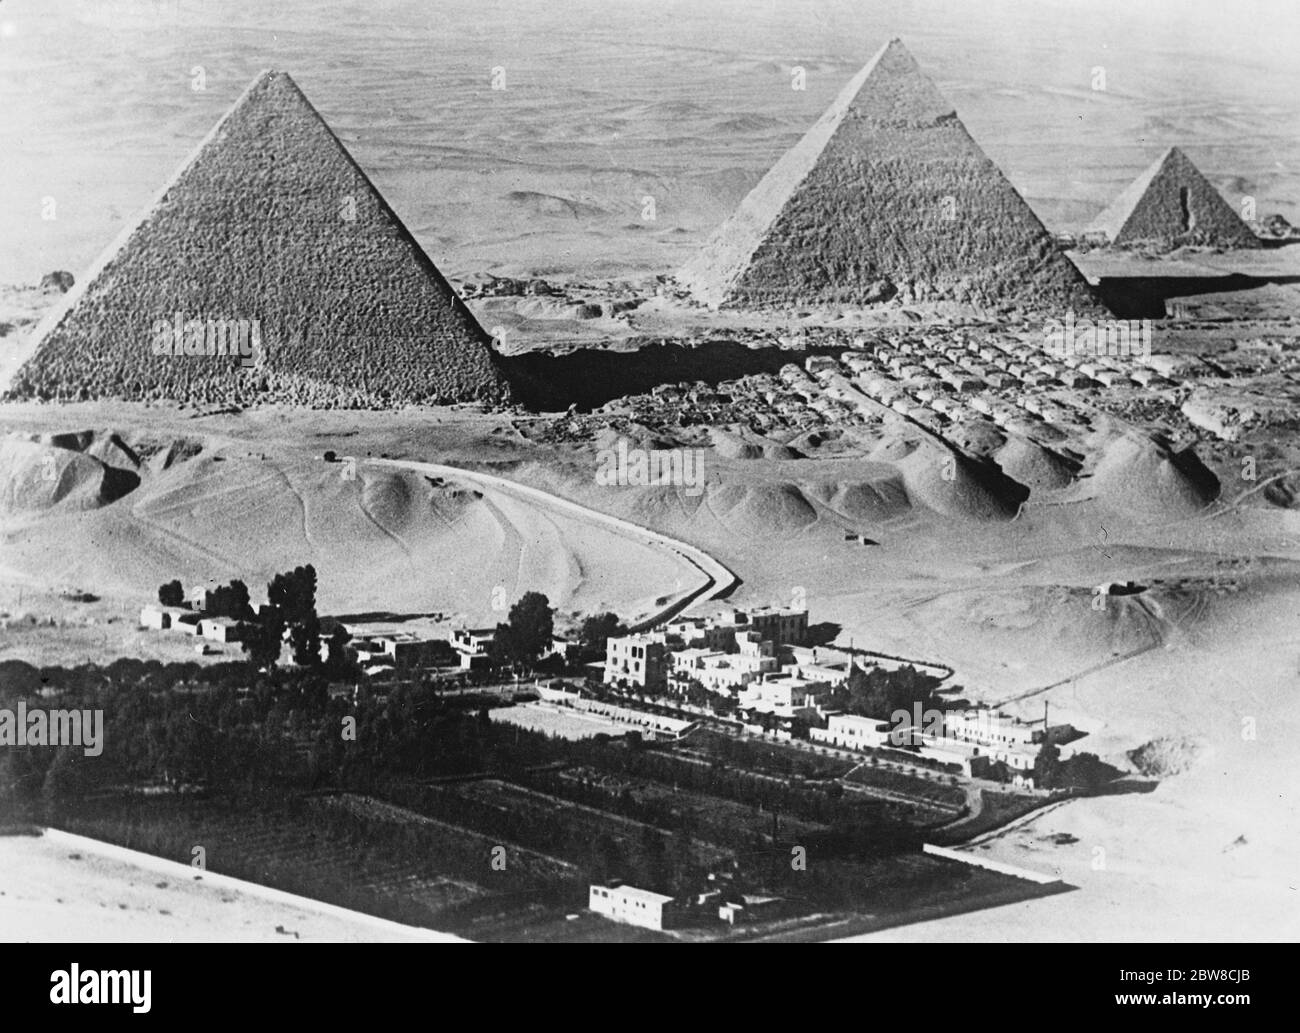 Una nuova impressionante fotografia aerea dall'Egitto , che mostra il Mena House Hotel in primo piano , con le piramidi di Gizeh oltre . 13 luglio 1927 Foto Stock